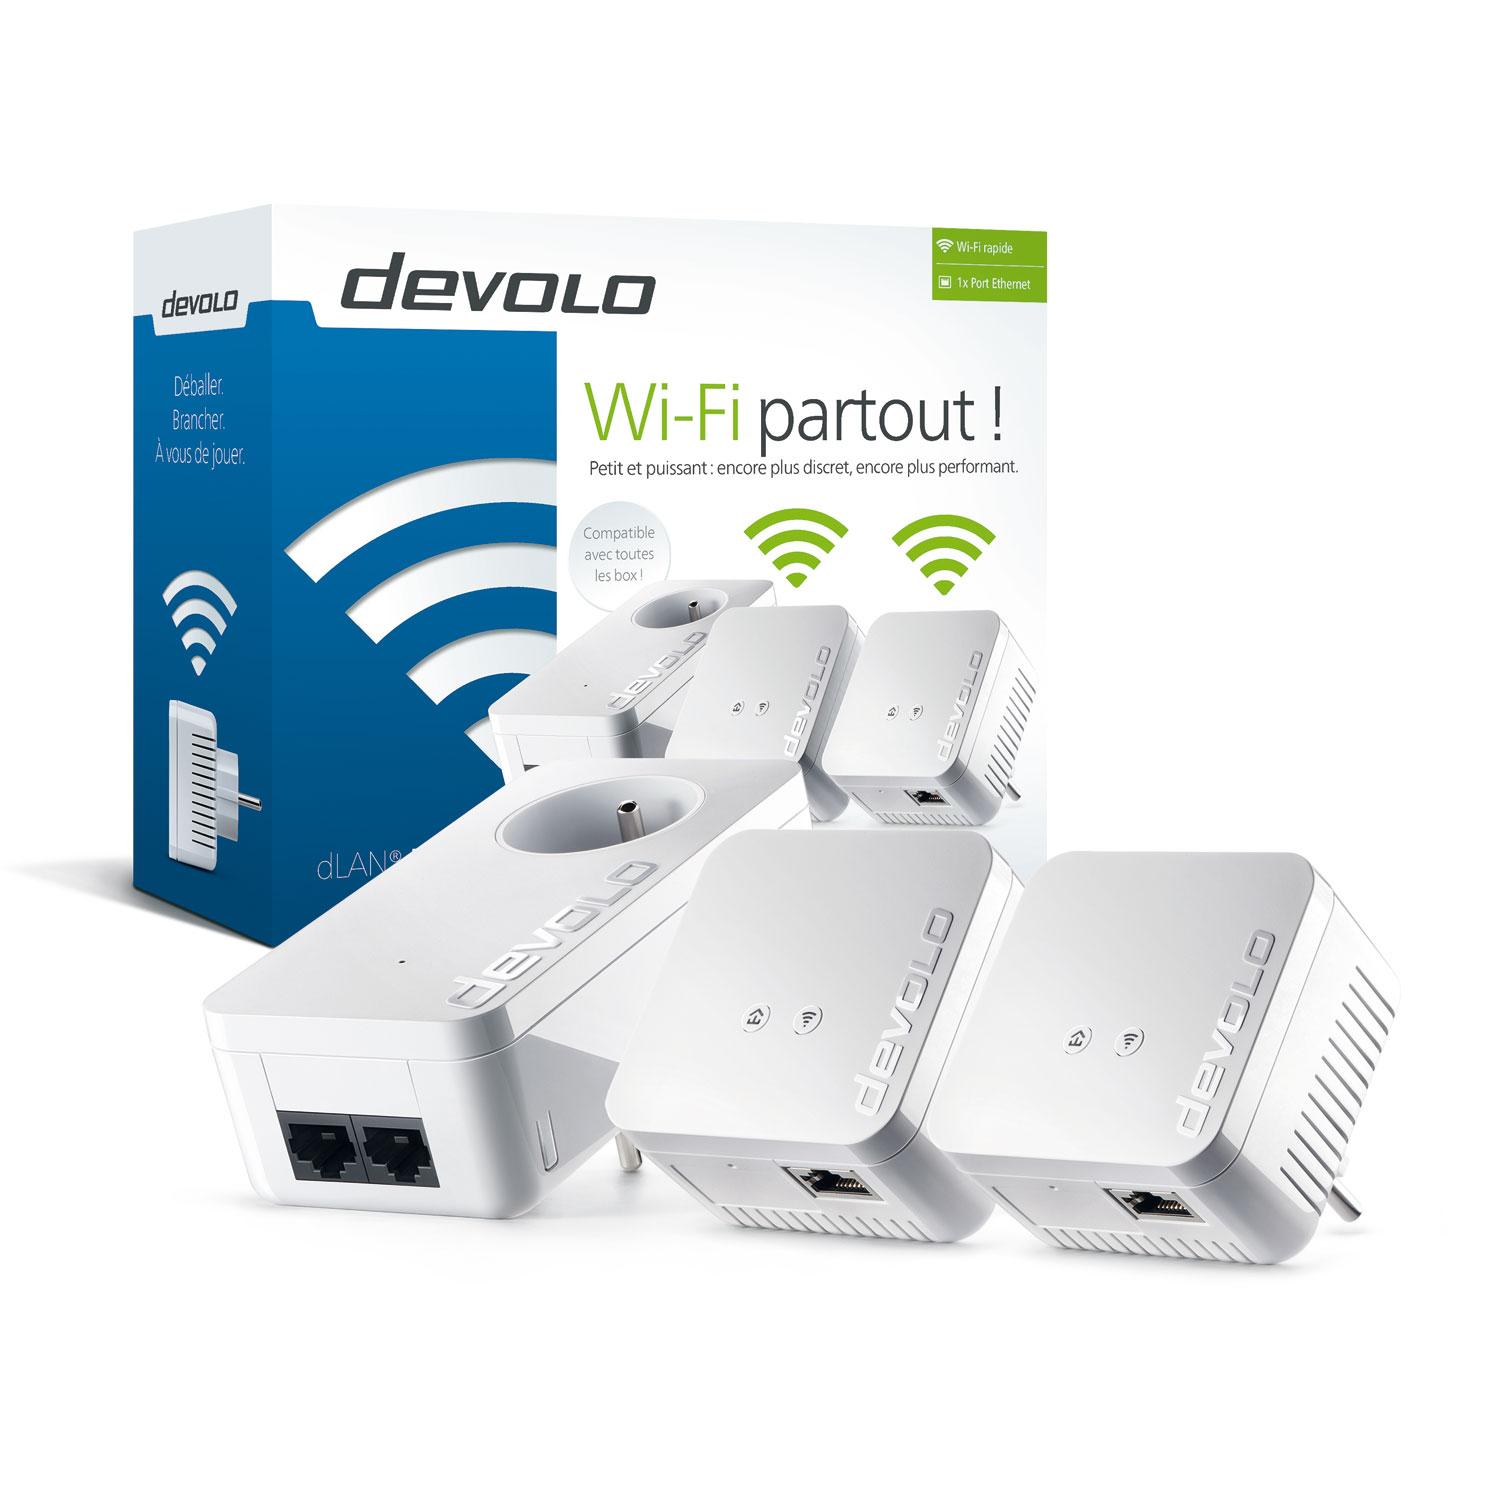 devolo dlan 550 wifi